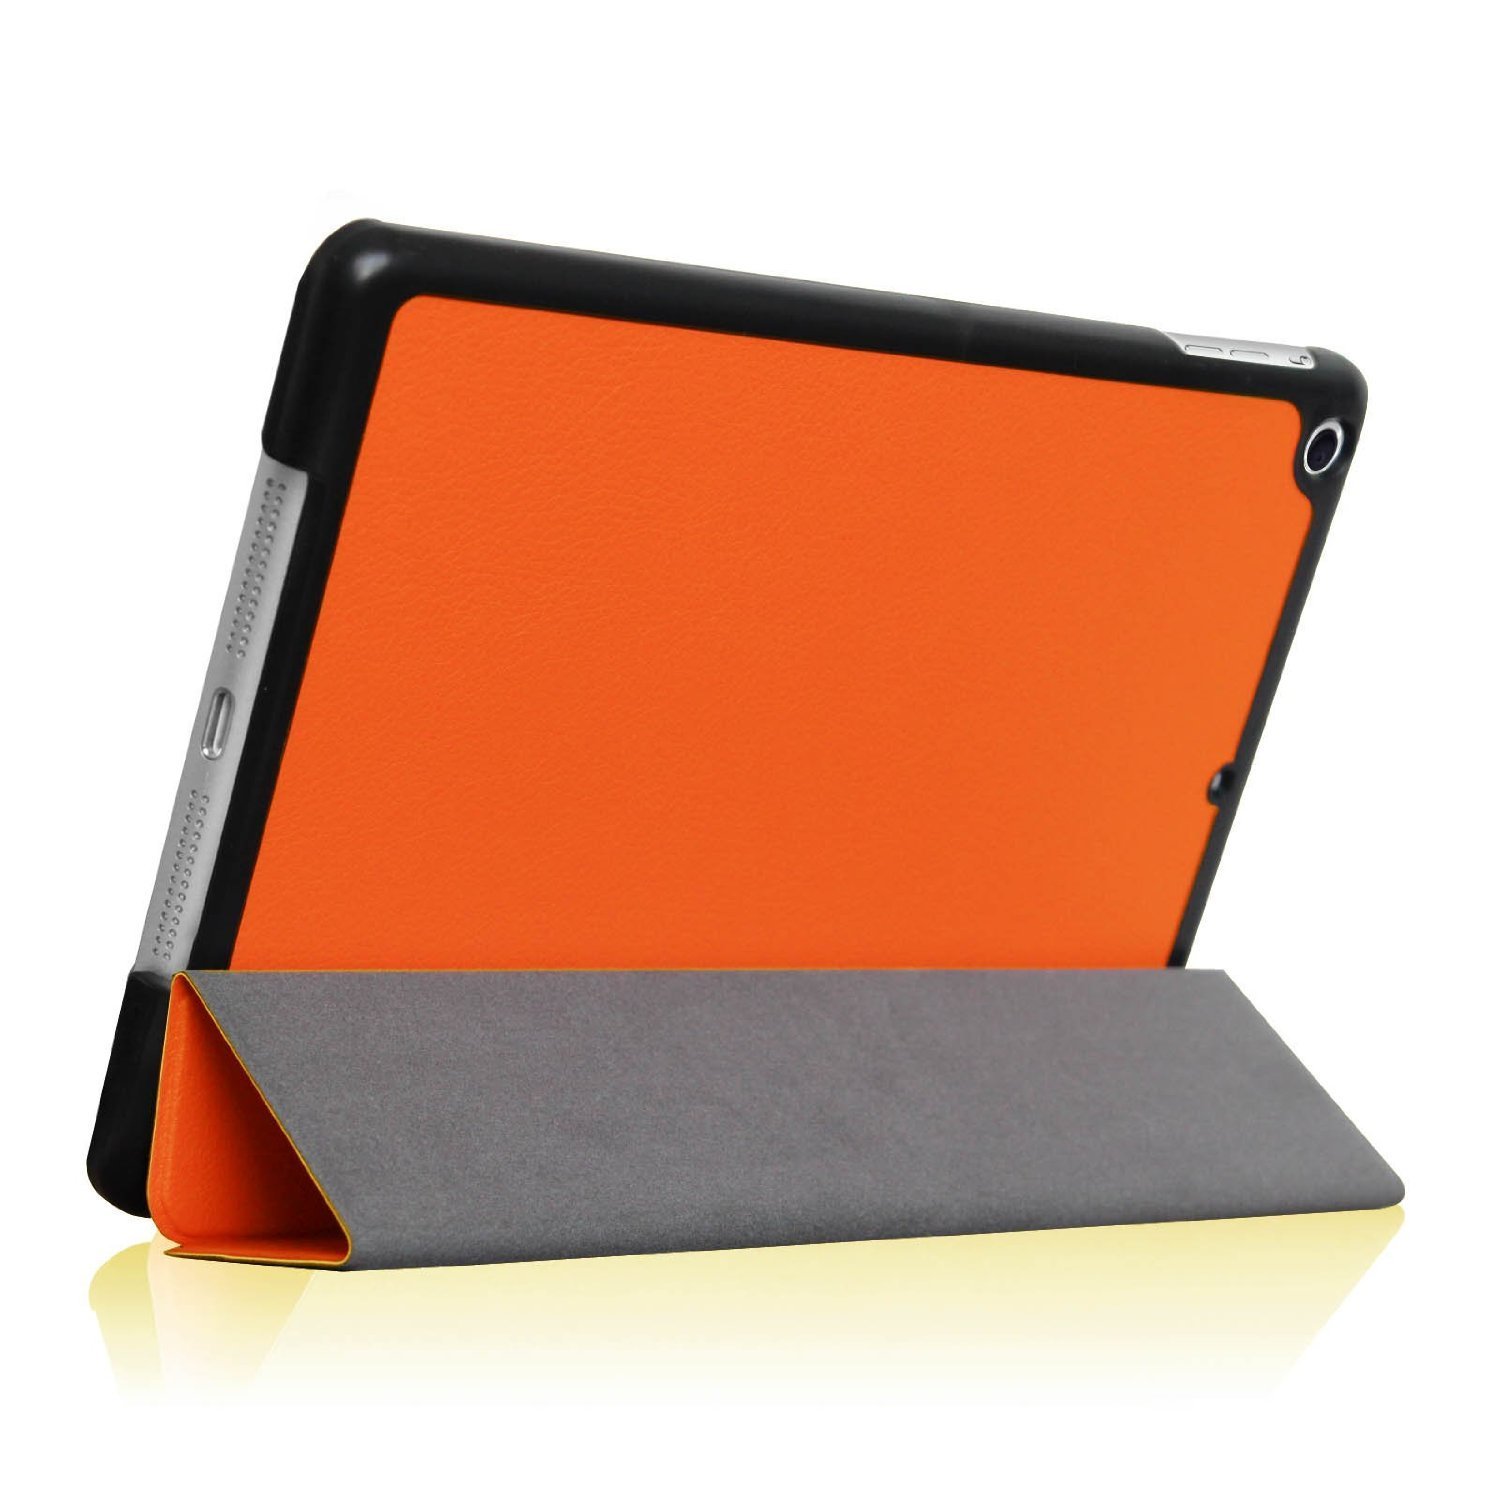 【楽天市場】【送料無料】 ipad ケース iPad mini4/mini5 2019 専用選択可能スリム三つ折カバー スマートケース 超薄型